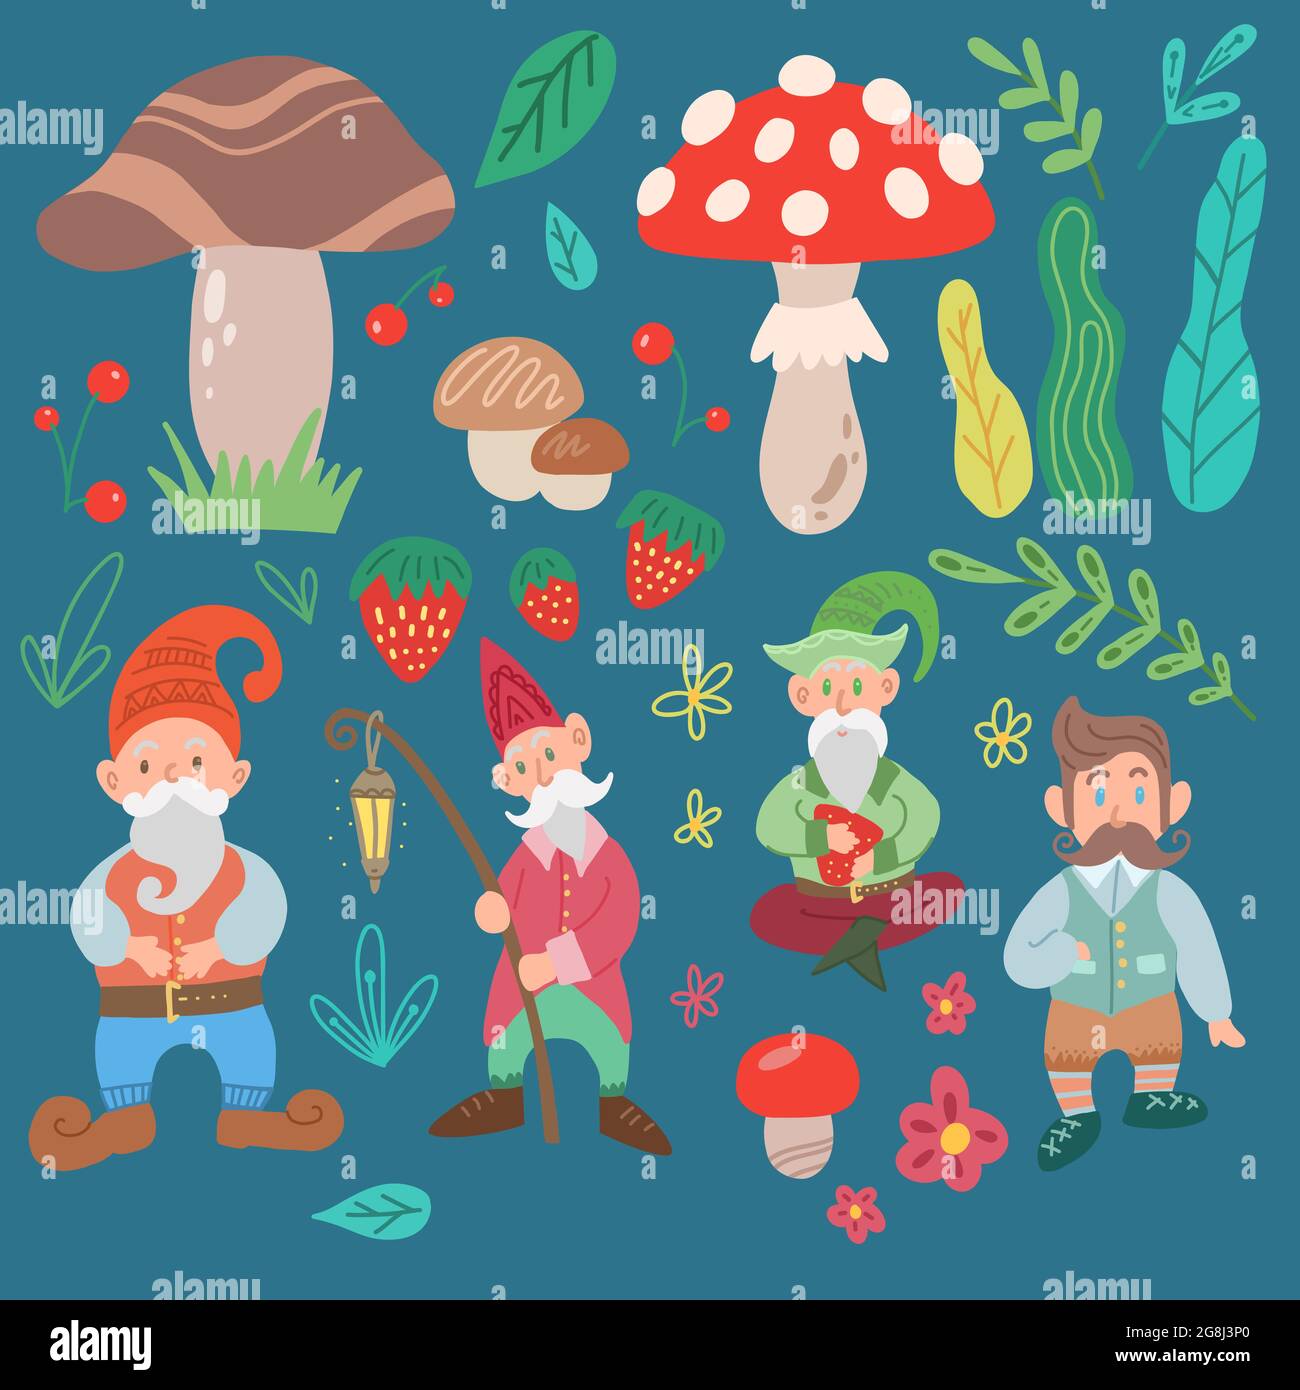 Ensemble de divers gnomes, champignons, feuilles et fleurs isolés de l'arrière-plan. Personnage de fée de dessin animé à la main et éléments de nature. Les lixipréchonnes Illustration de Vecteur